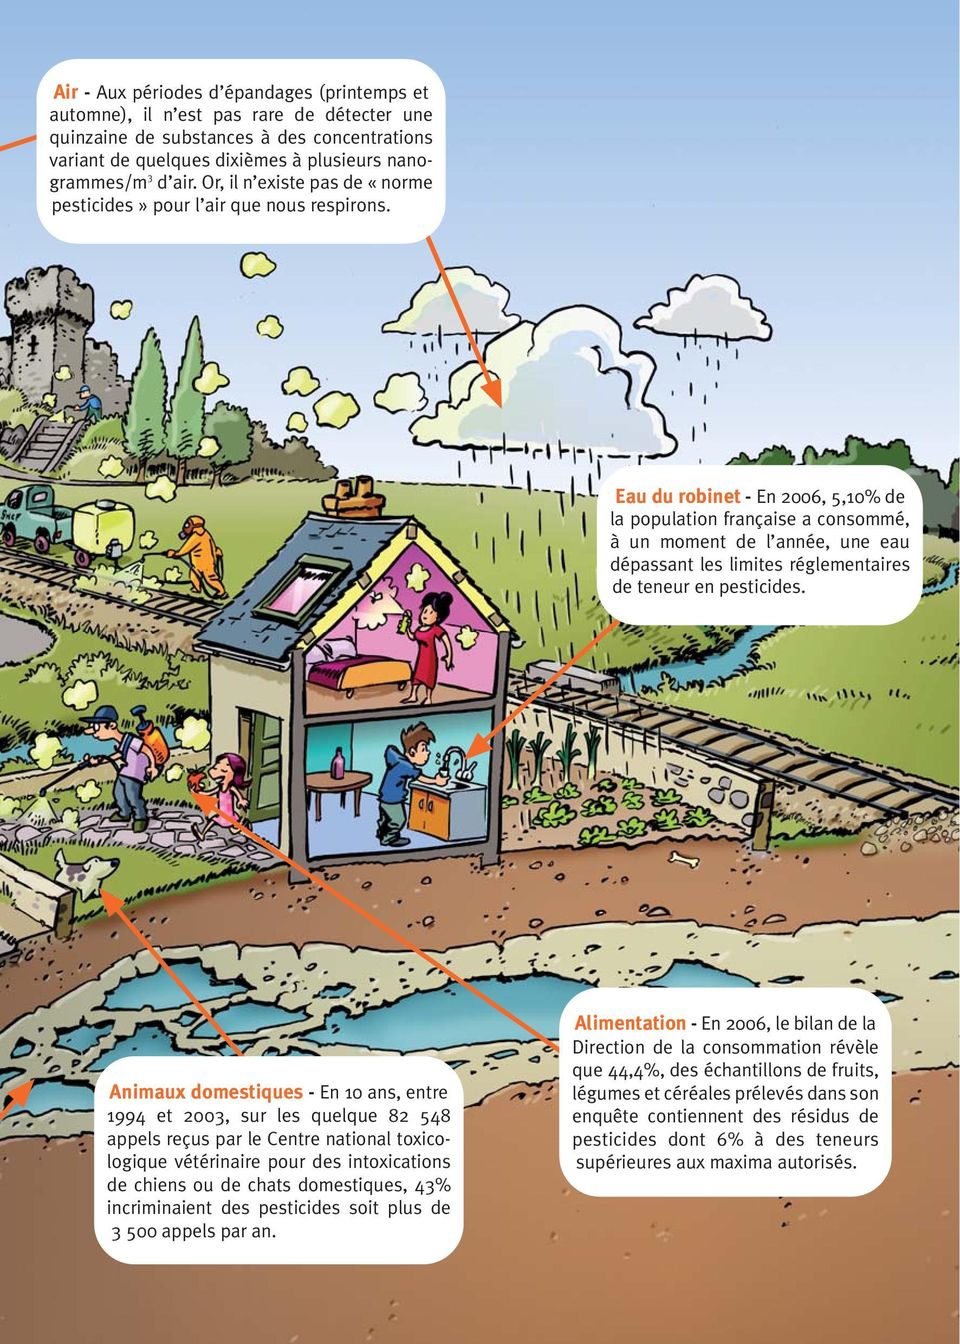 Eau du robinet - En 2006, 5,10% de la population française a consommé, à un moment de l année, une eau dépassant les limites réglementaires de teneur en pesticides.